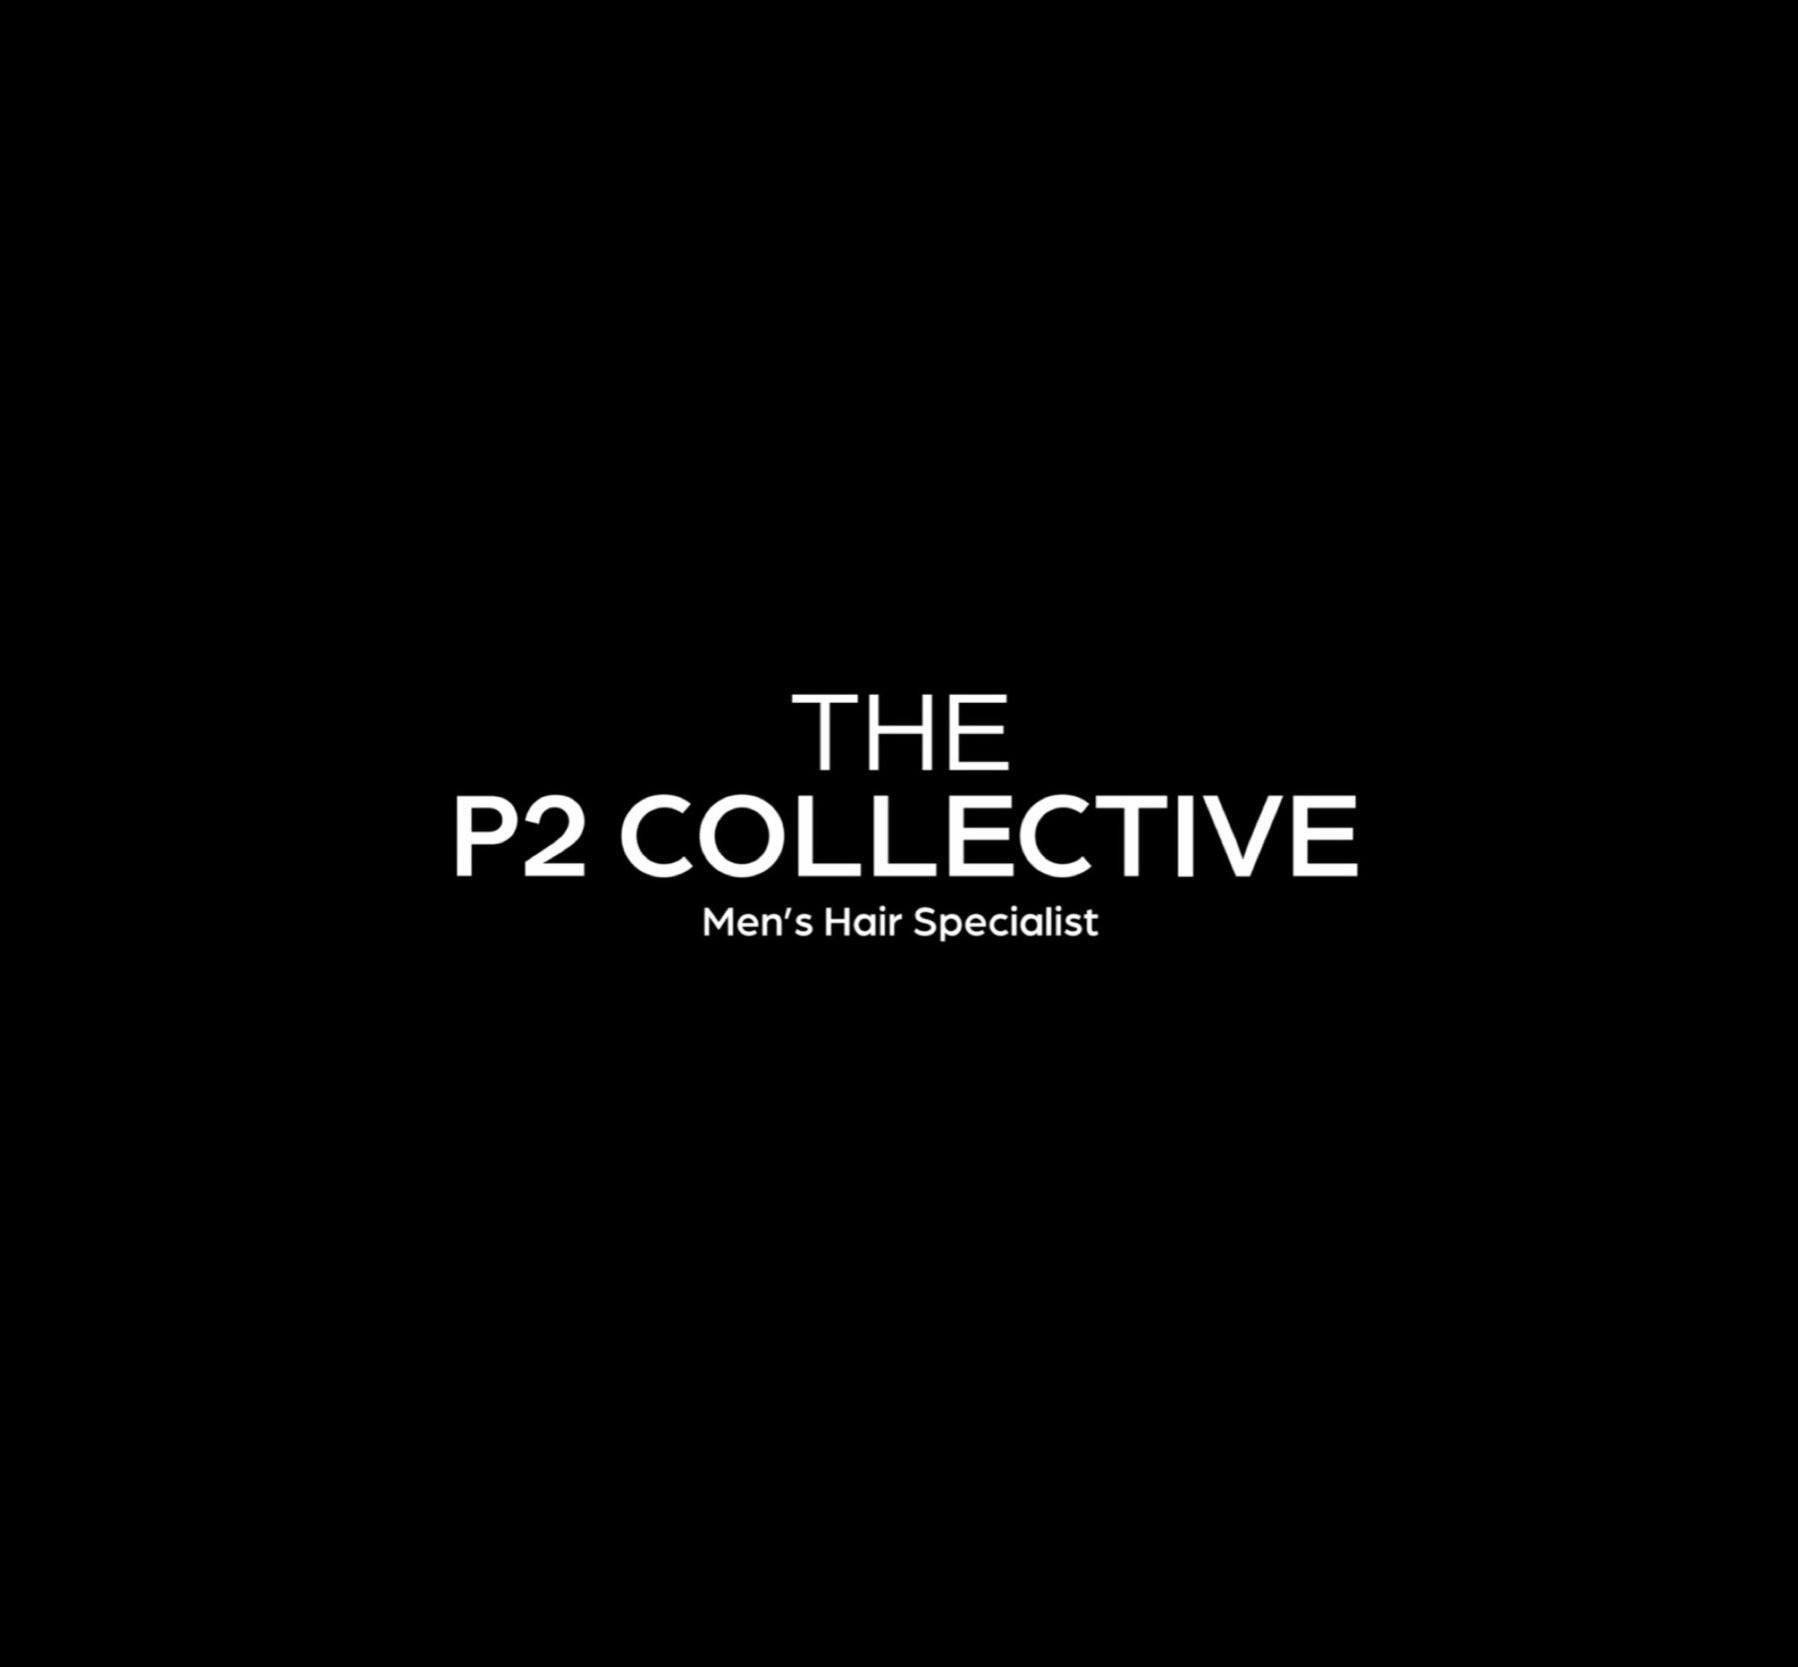 THE P2 COLLECTIVE logo